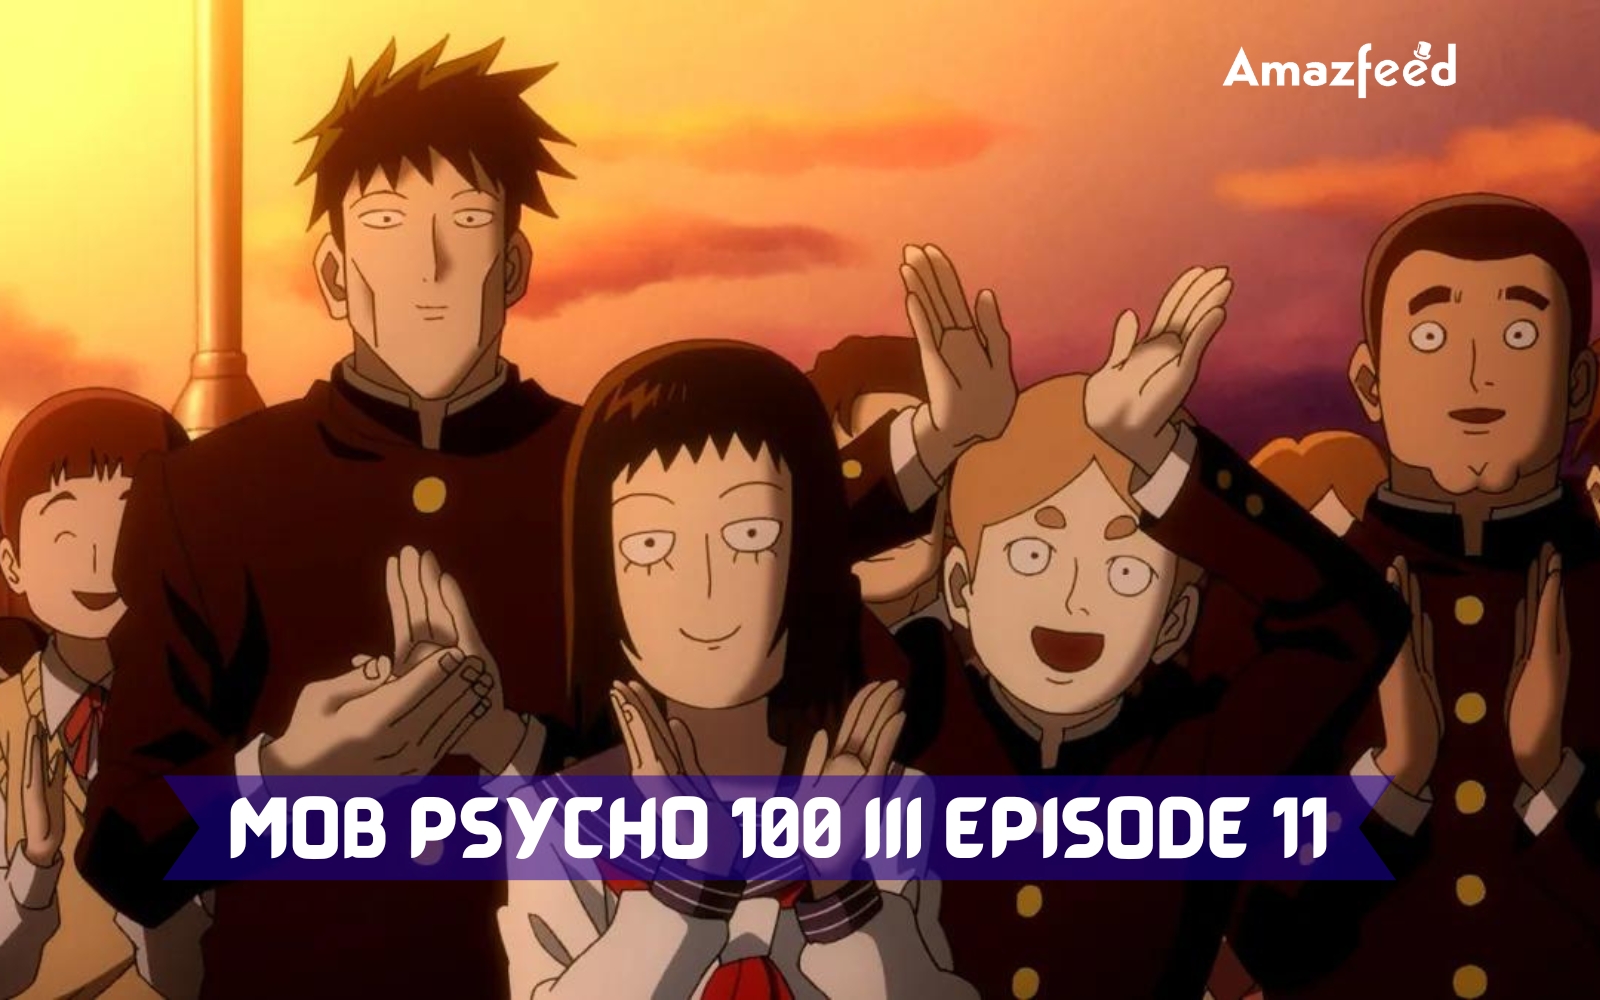 Mob Psycho 110 III Episode 11